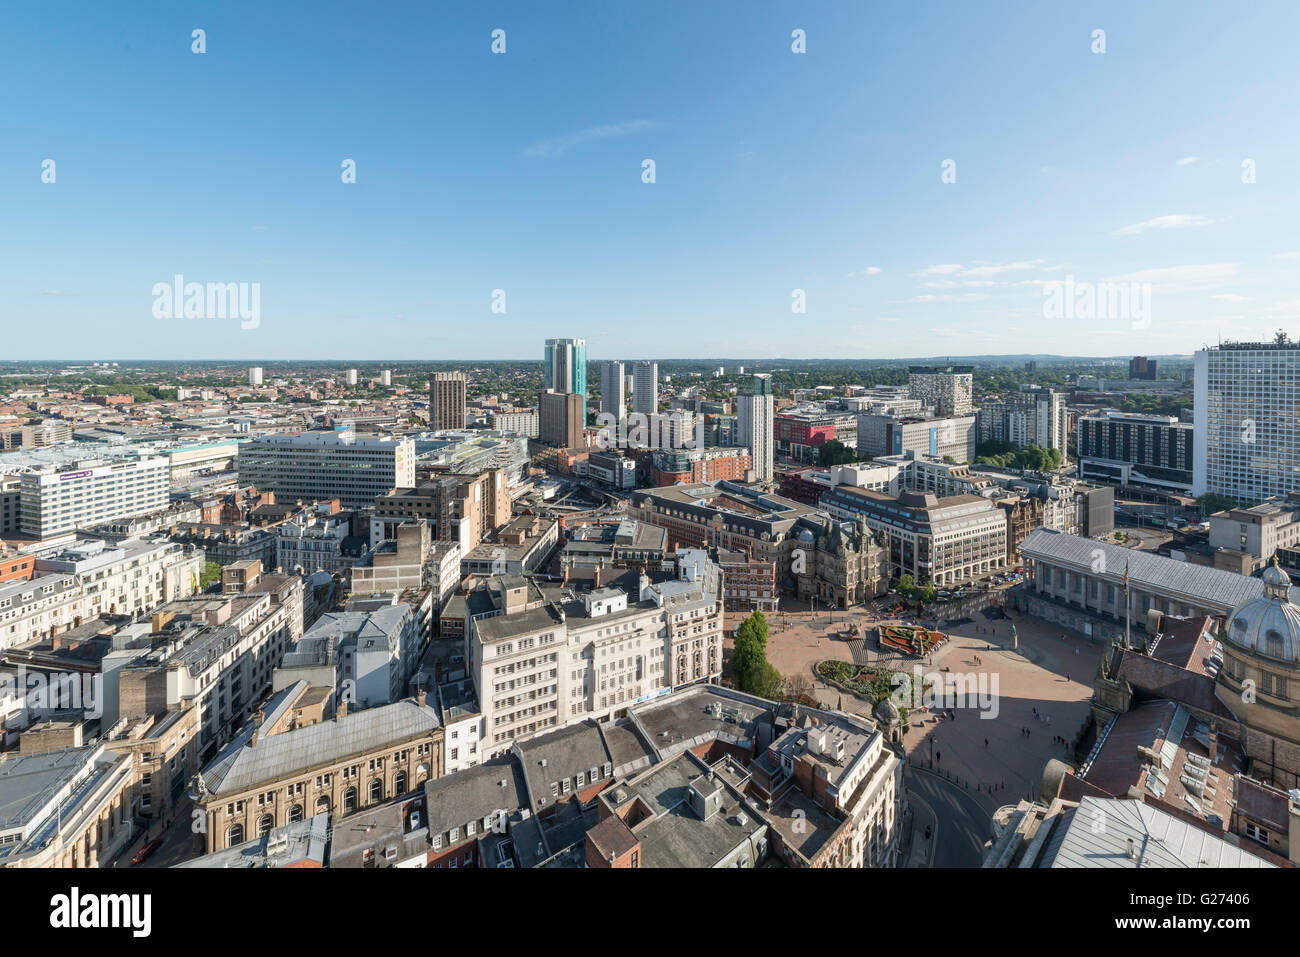 Photographie aérienne du centre-ville de Birmingham, en Angleterre. Banque D'Images